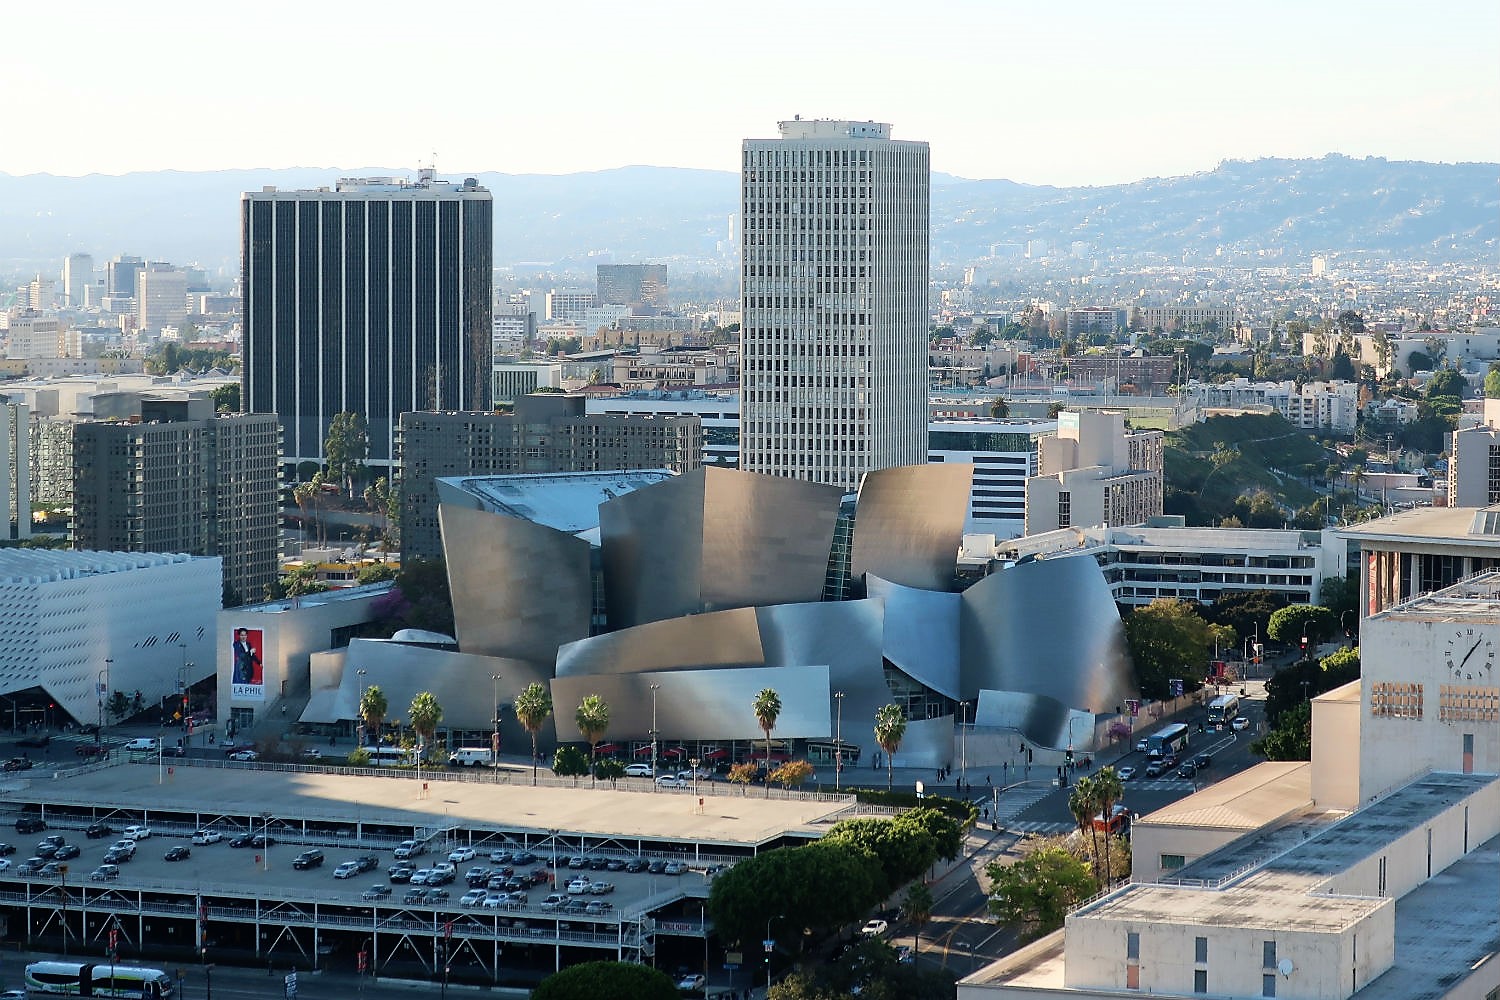 Los Angeles Theatres: Disney Hall